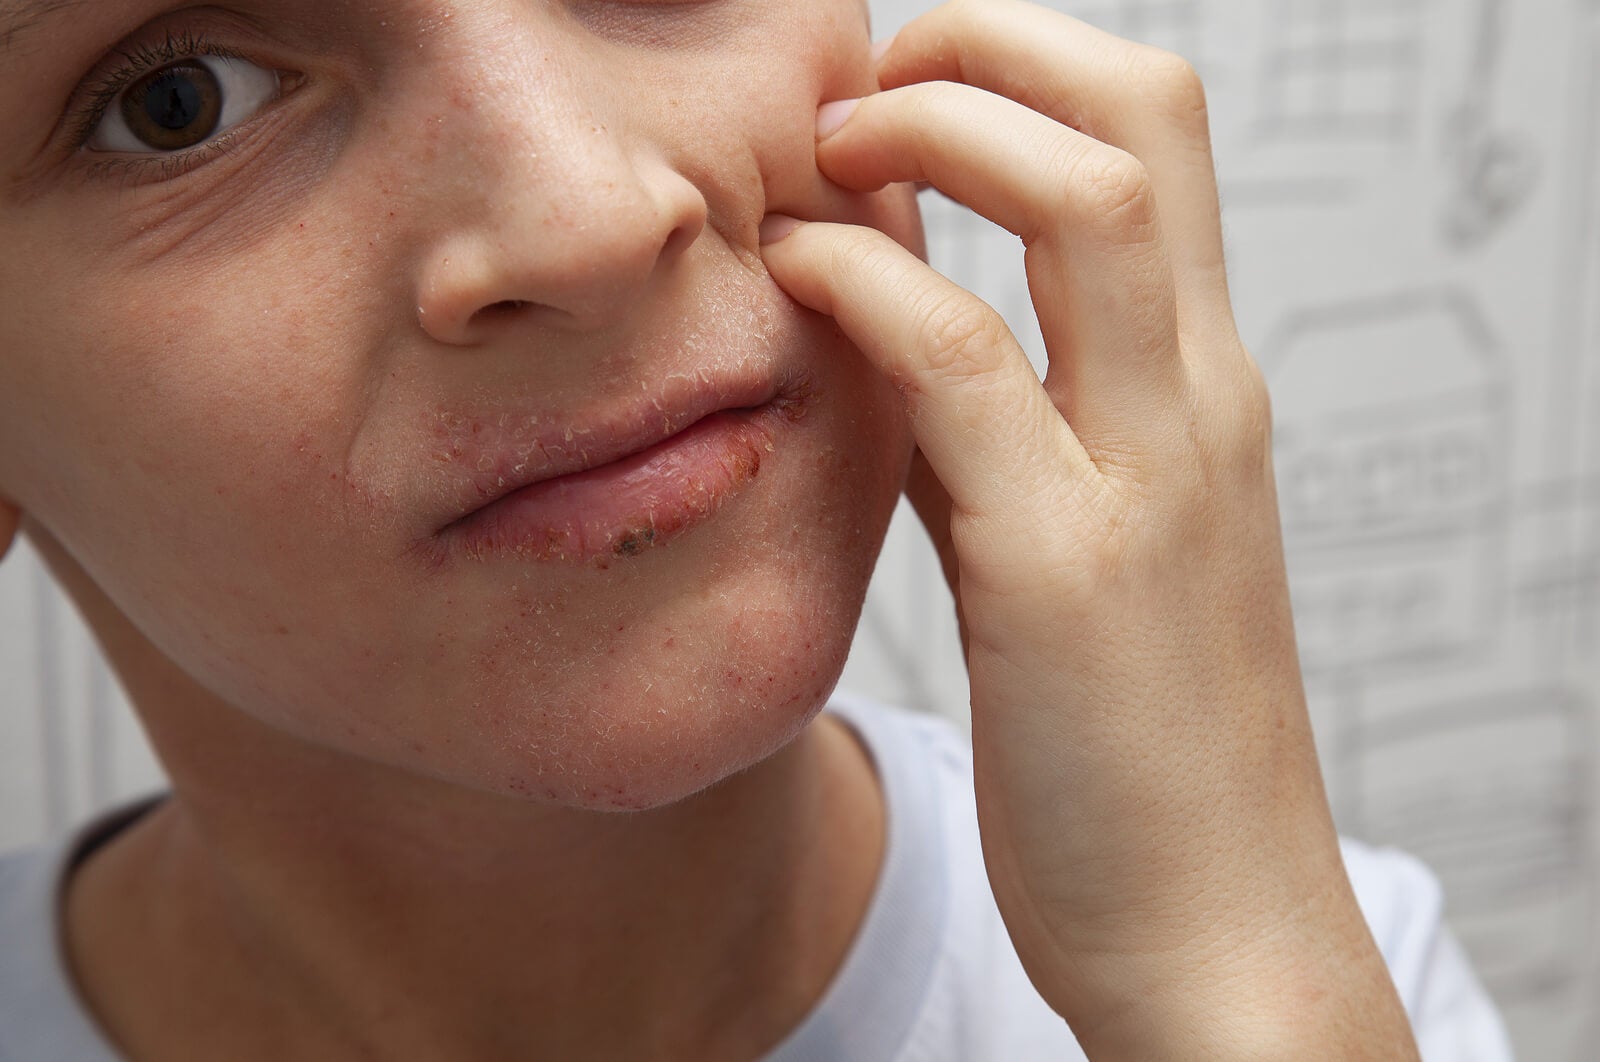 La dermatitis perioral suele afectar el área del rostro.